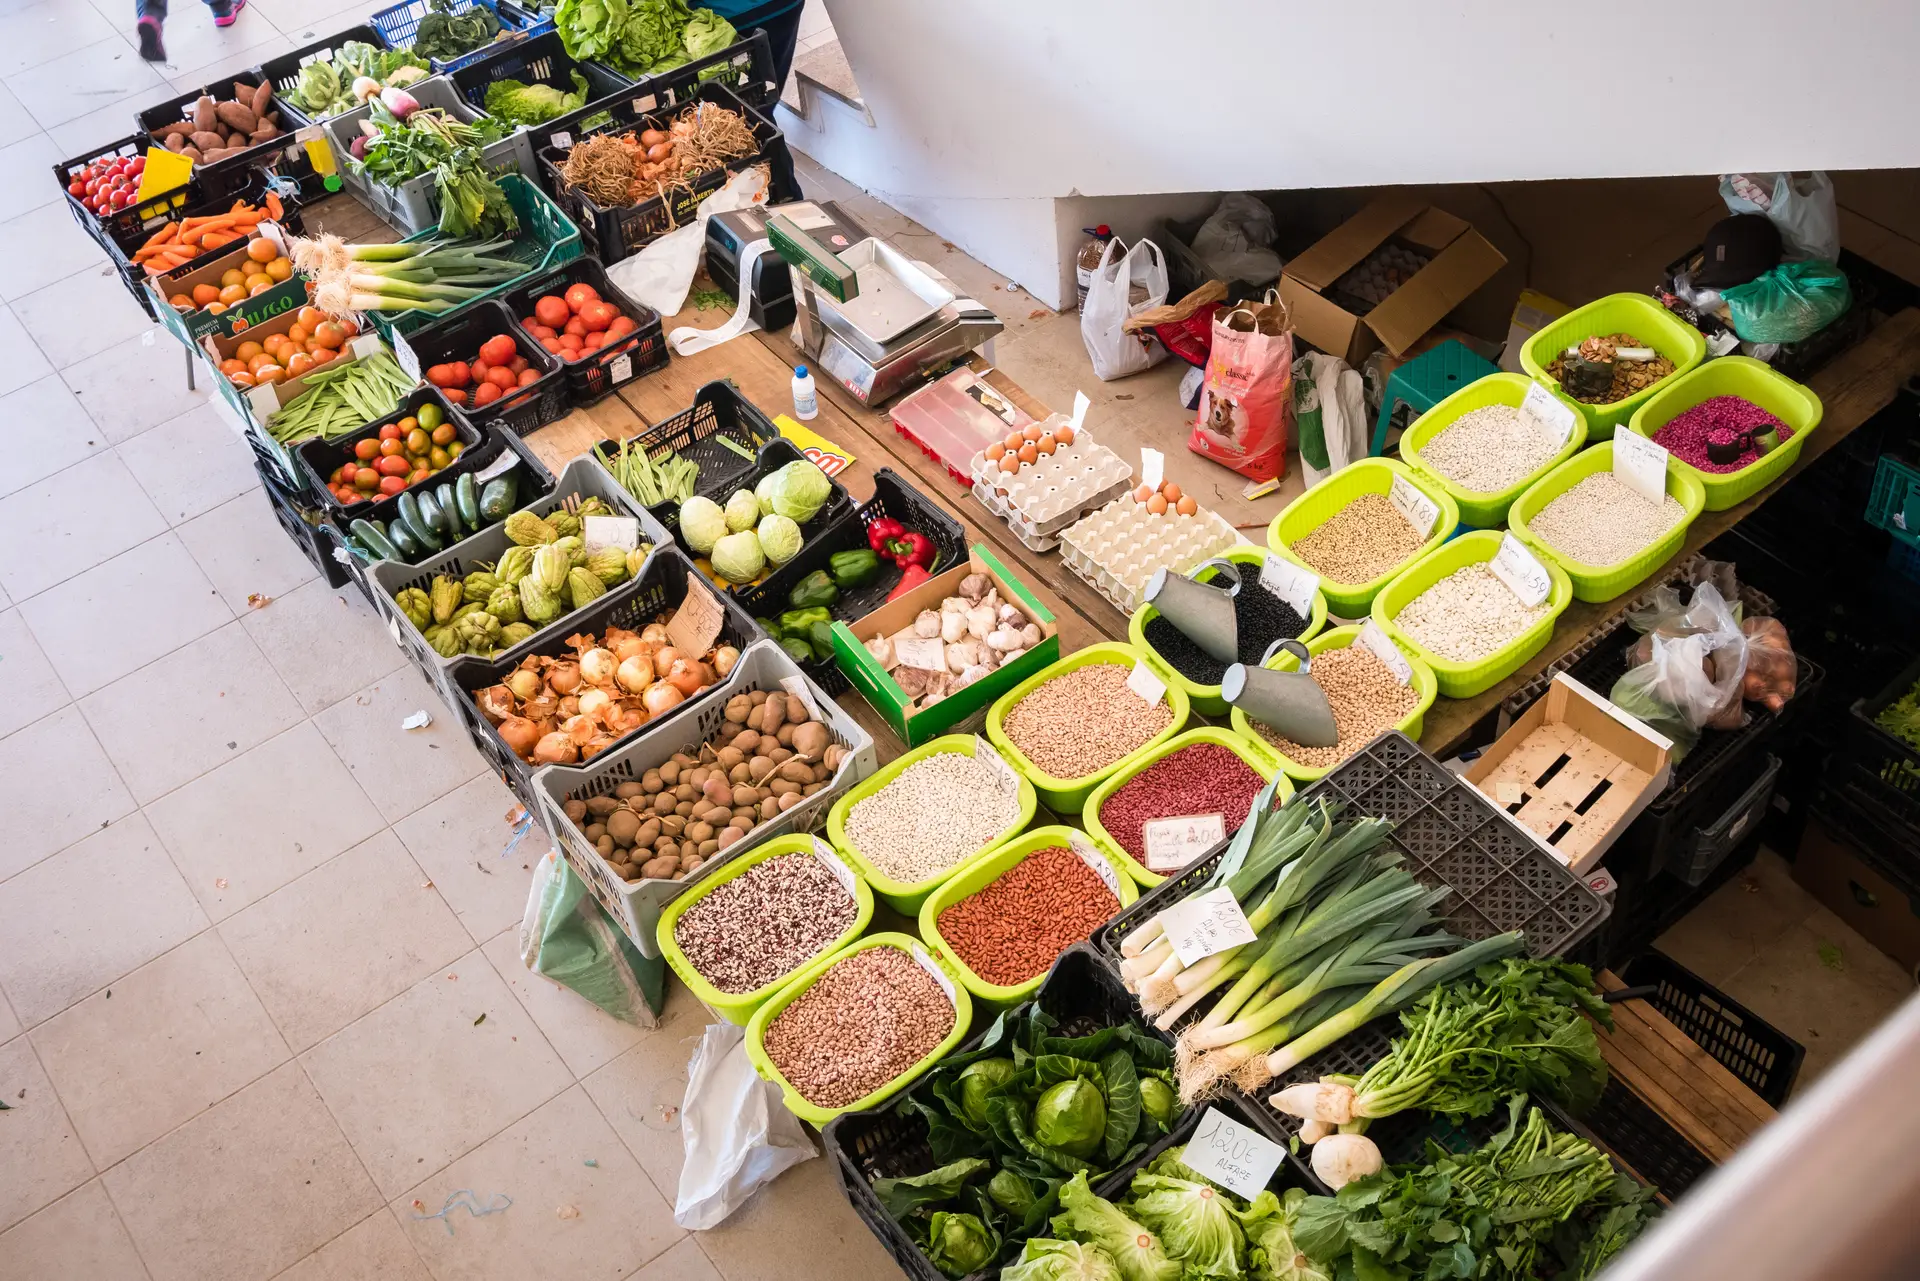 Cabaz de alimentos com IVA zero é “saudável” e adequado às preferências dos portugueses, garantem nutricionistas